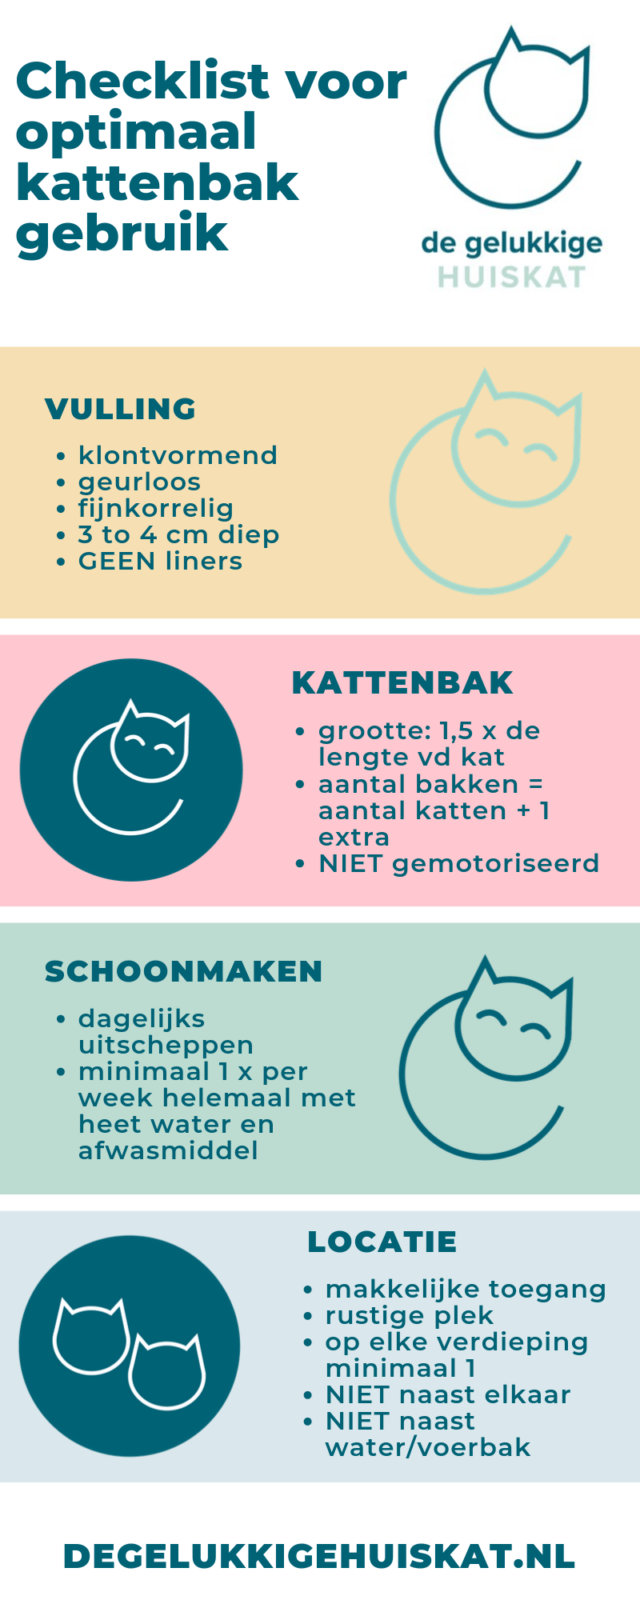 Kattenbak checklist